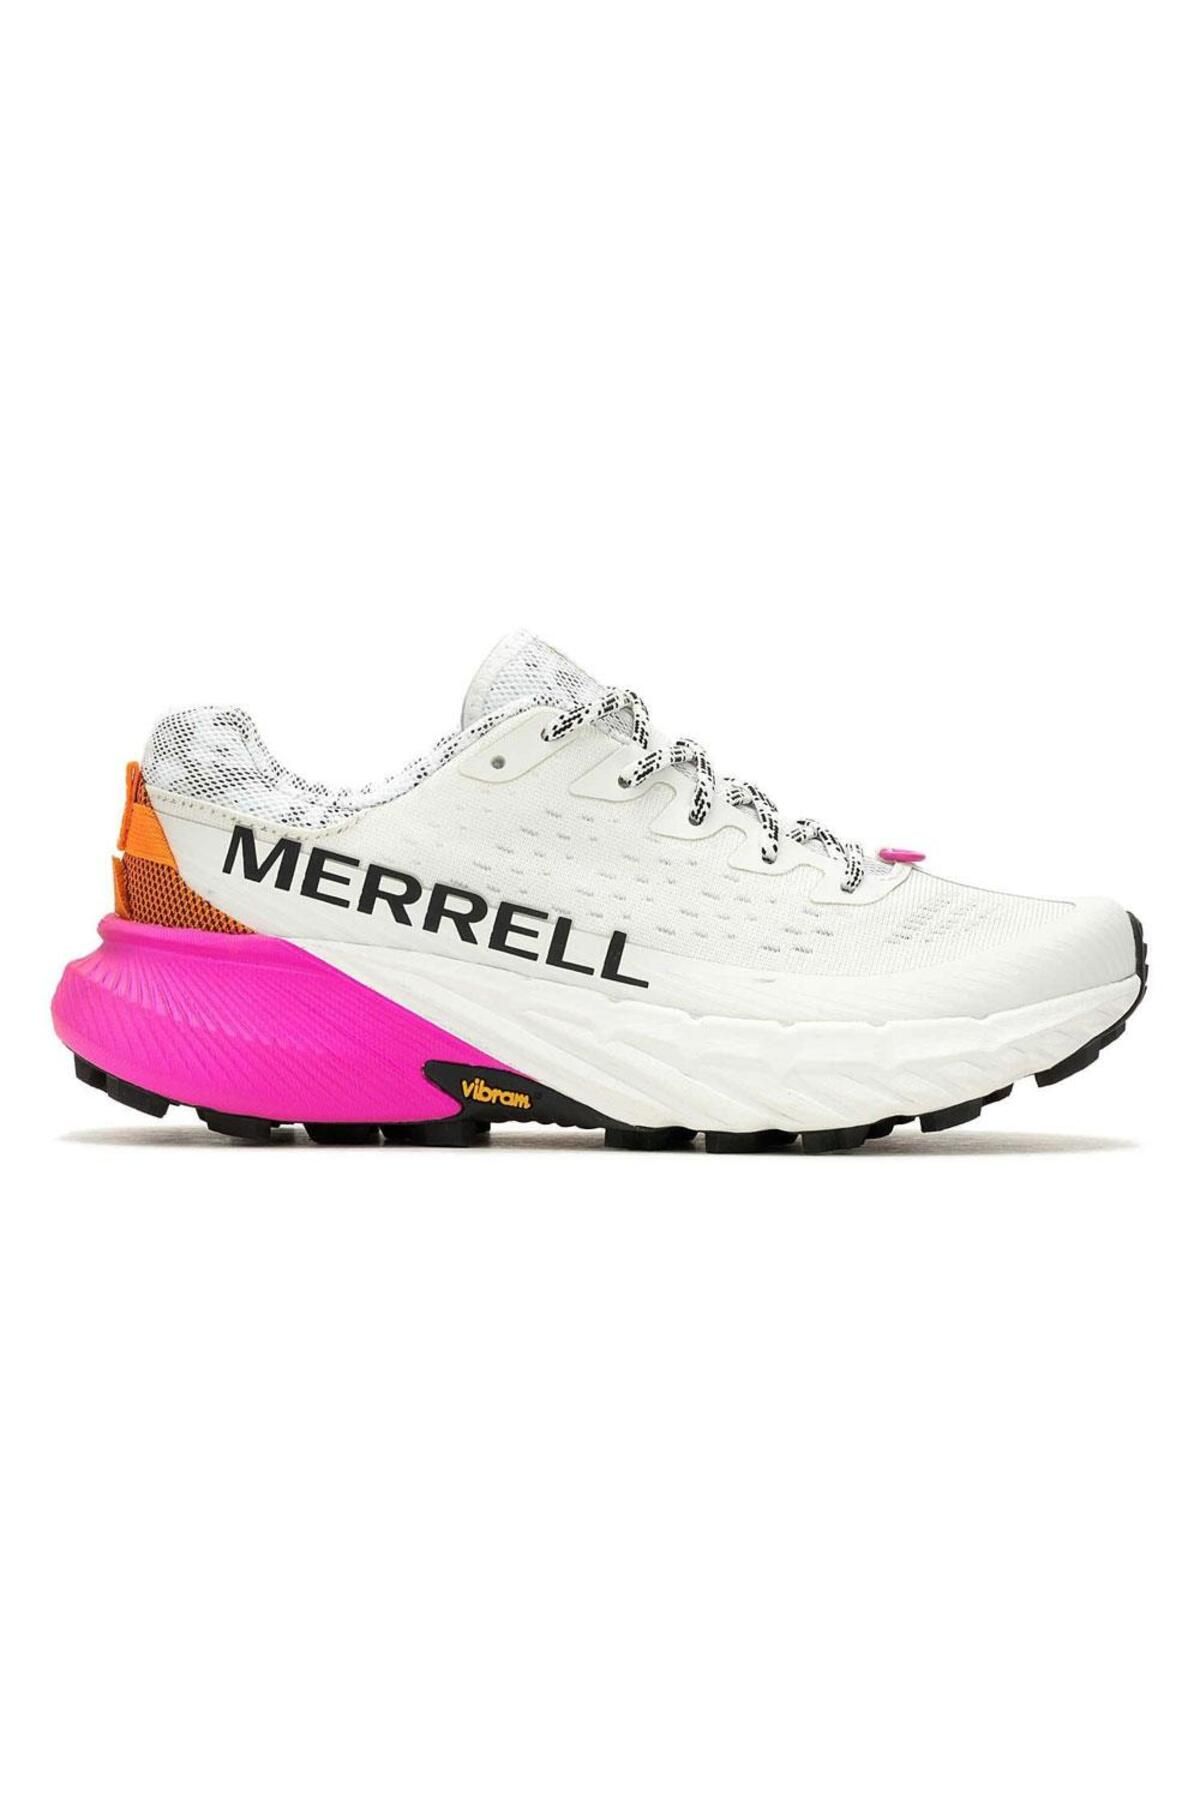 Merrell Agility Peak 5 Kadın Spor Ayakkabısı J068234